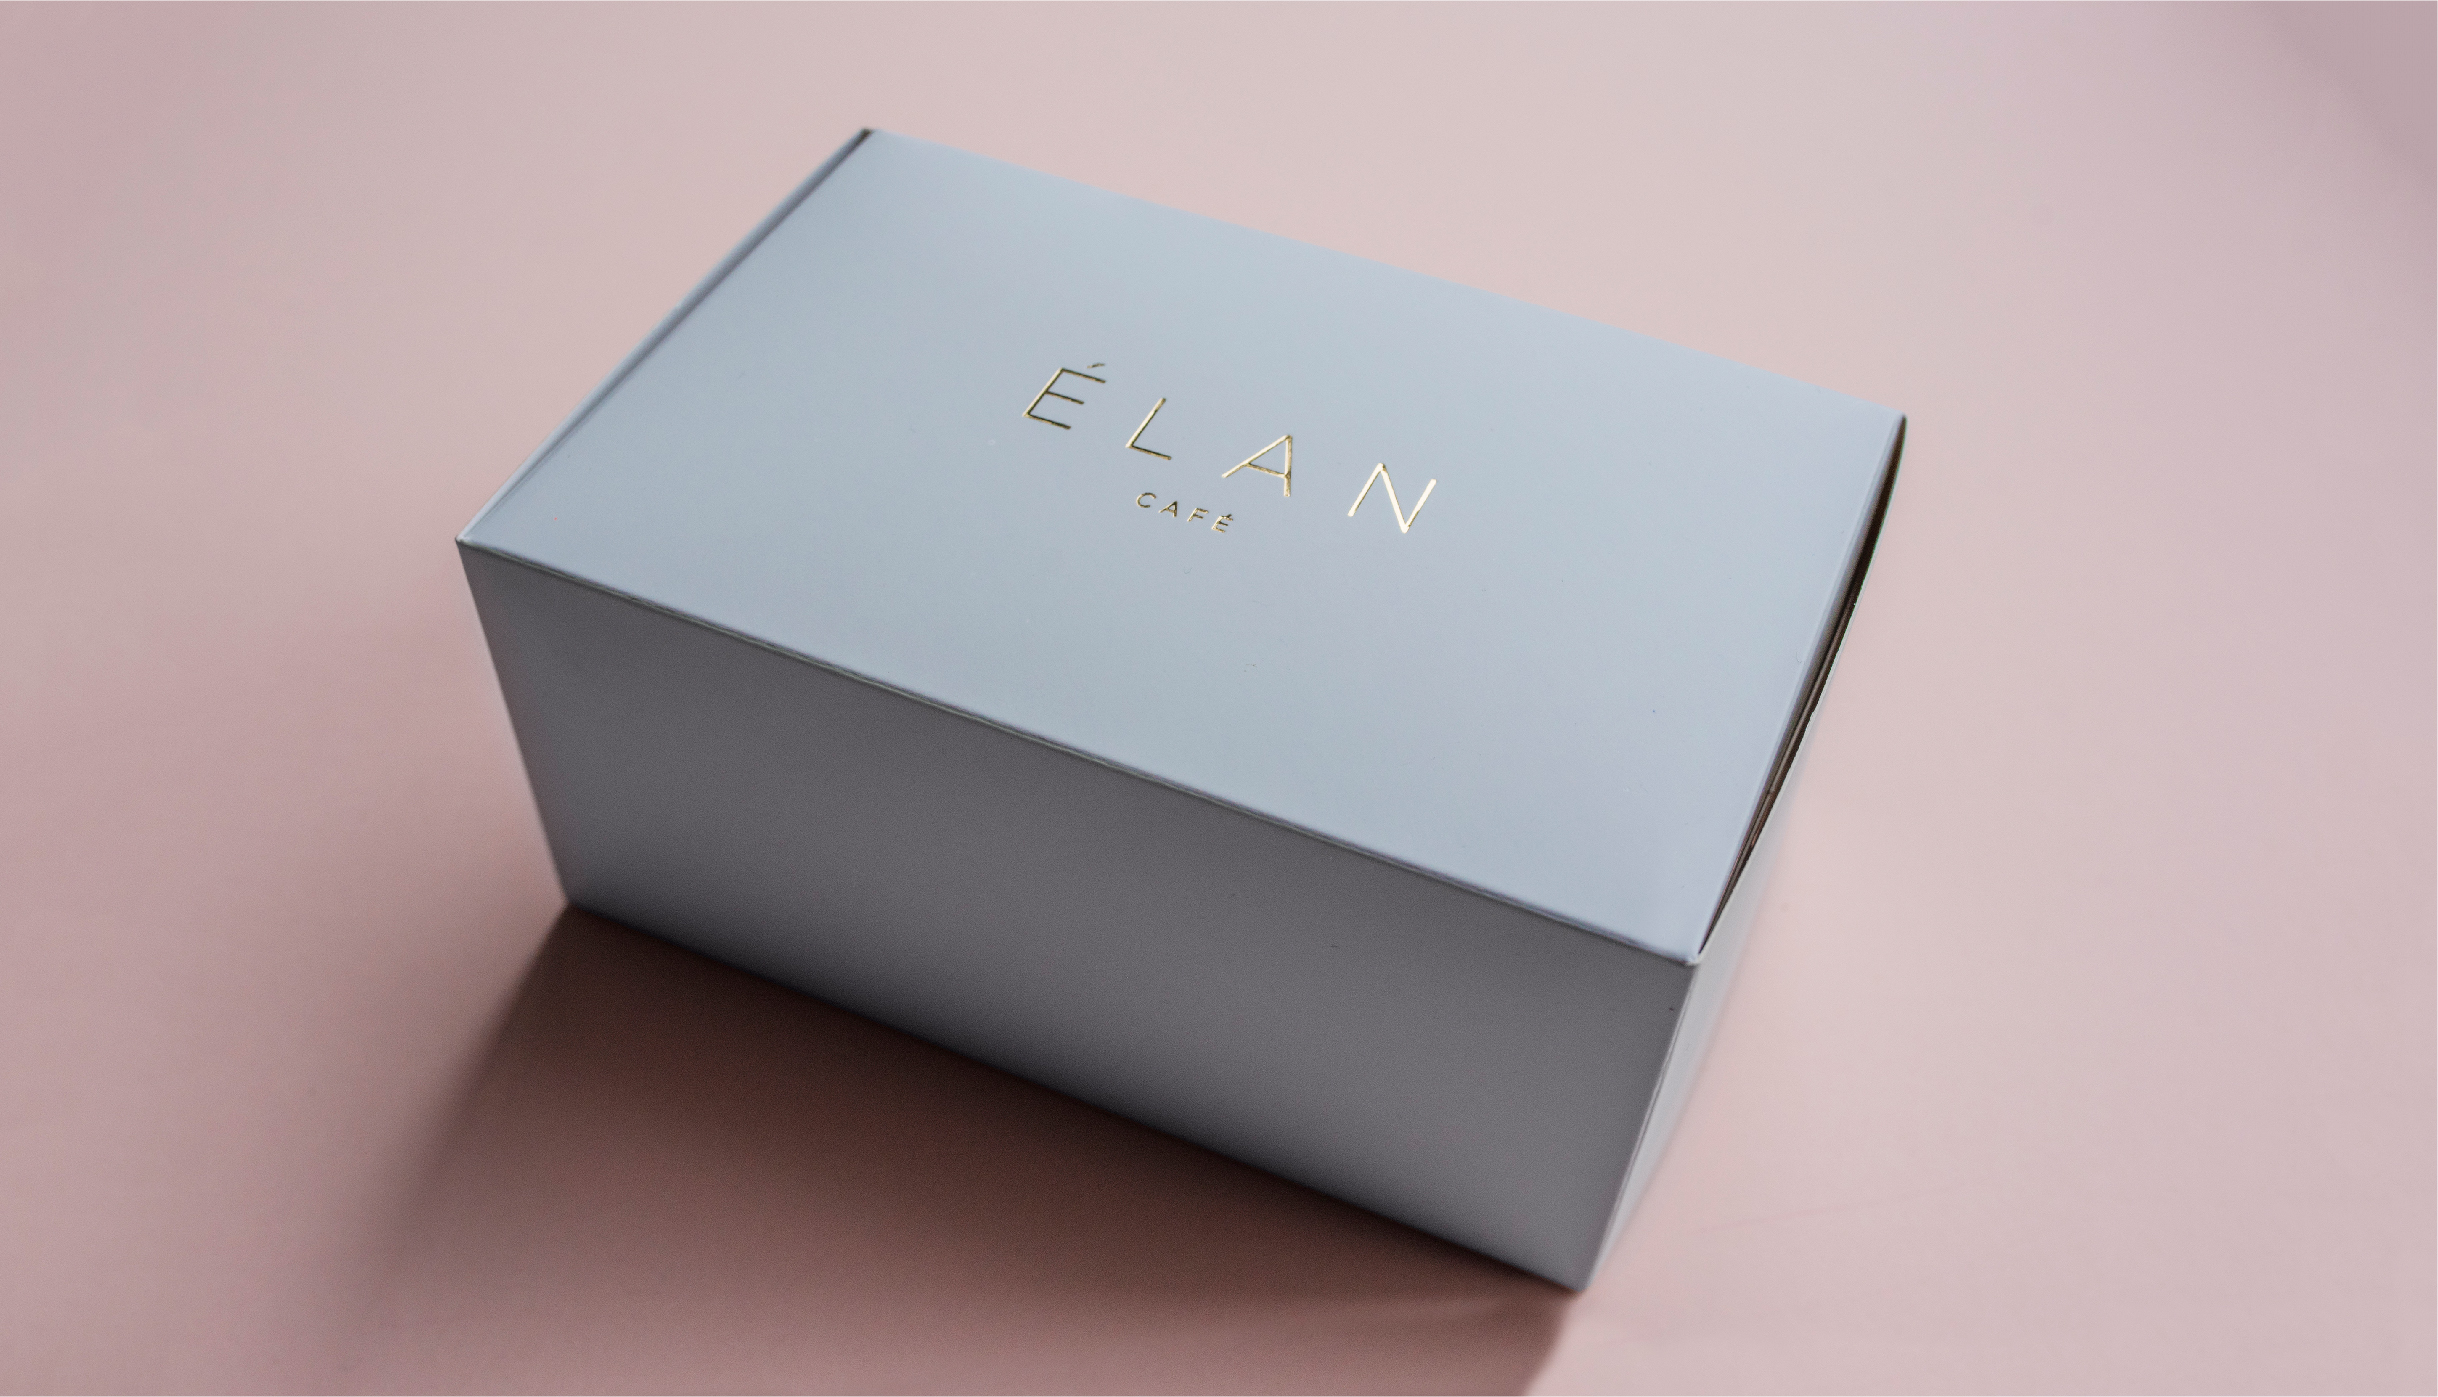 Branding and packaging for cake box for Elan Café